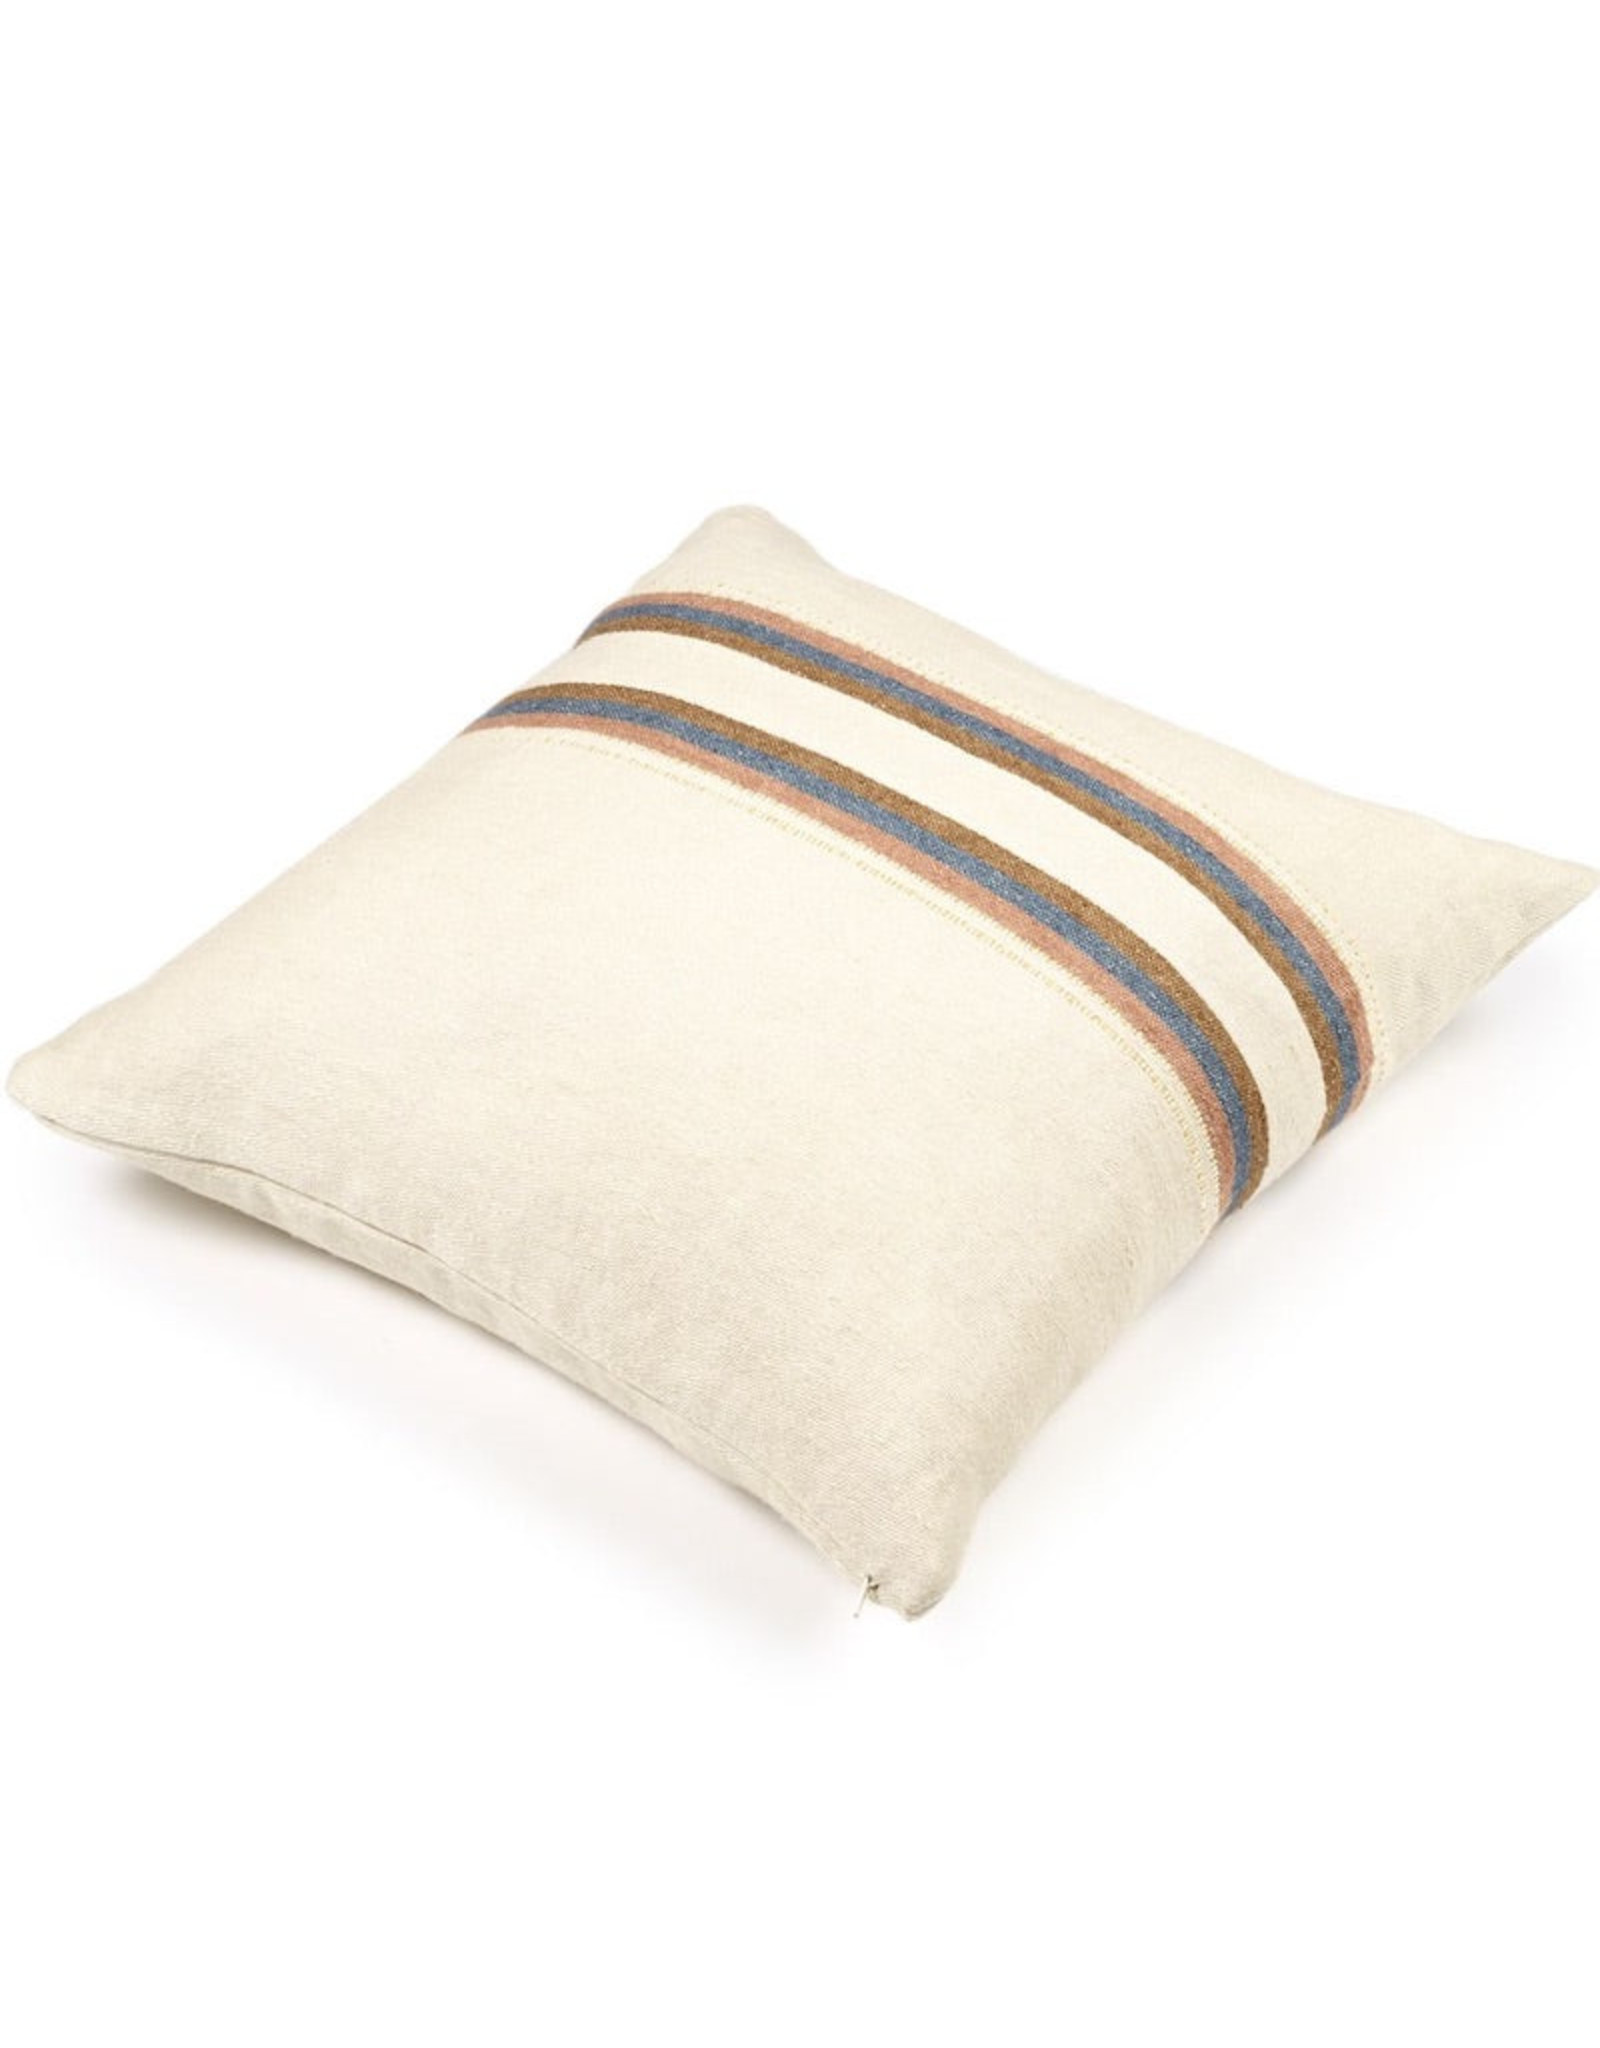 The Belgian Harlan Stripe Pillow 20 x 20